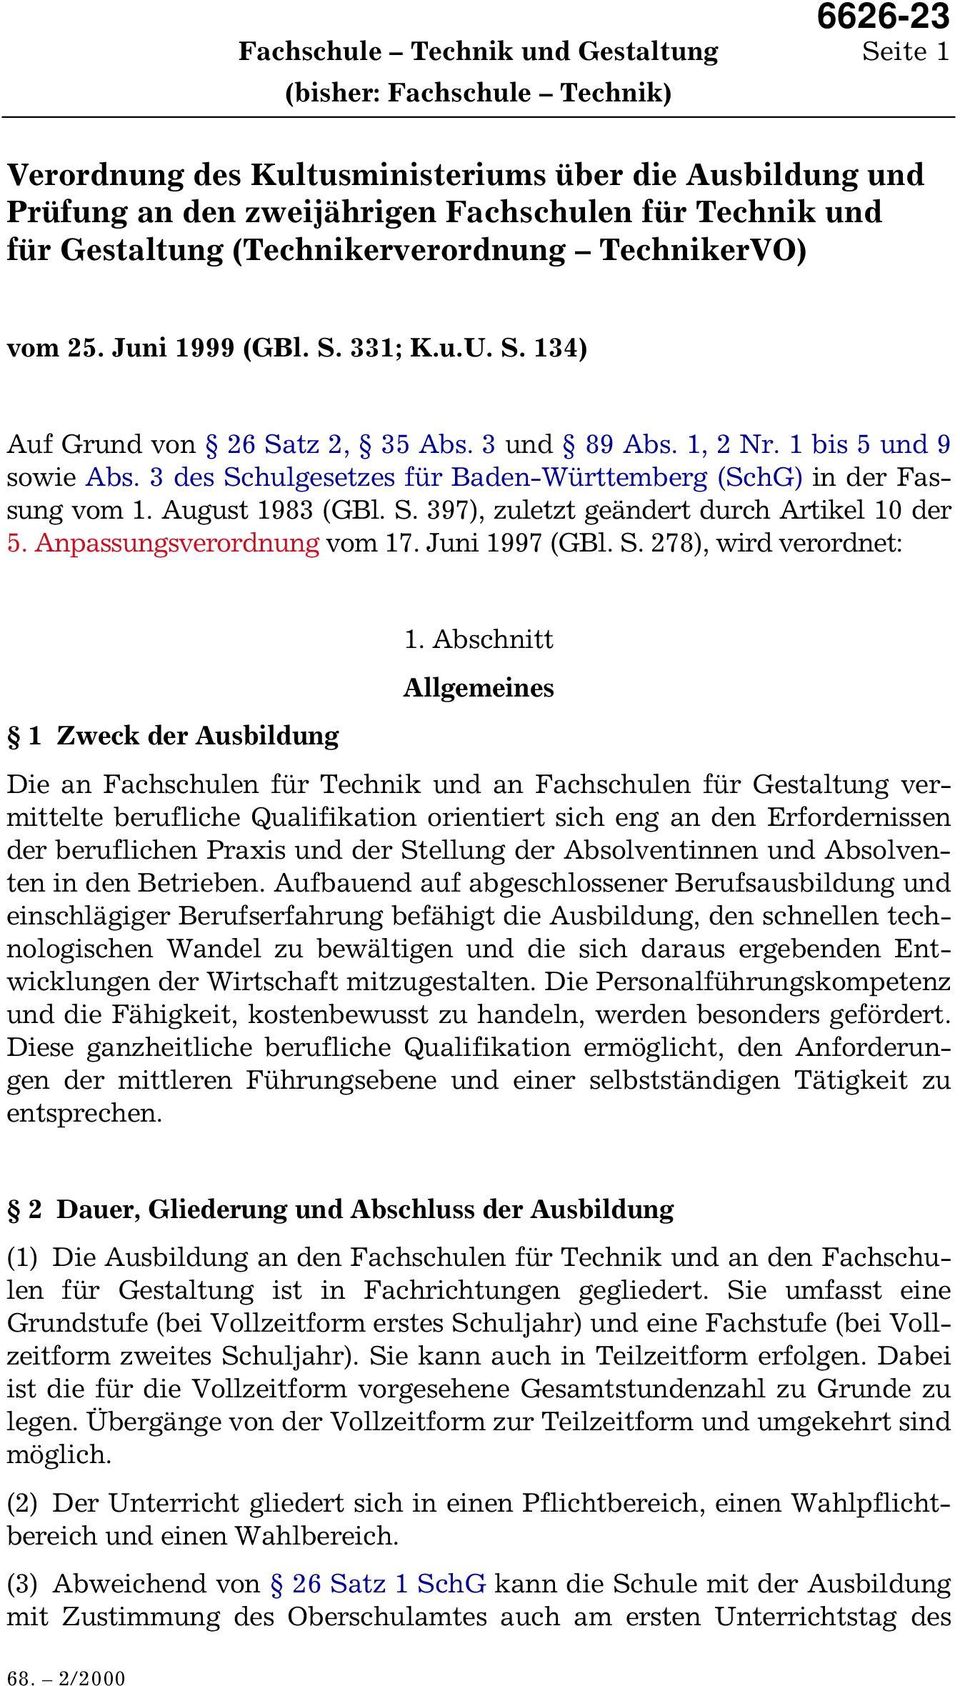 3 des Schulgesetzes für Baden-Württemberg (SchG) in der Fassung vom 1. August 1983 (GBl. S. 397), zuletzt geändert durch Artikel 10 der 5. Anpassungsverordnung vom 17. Juni 1997 (GBl. S. 278), wird verordnet: 1.